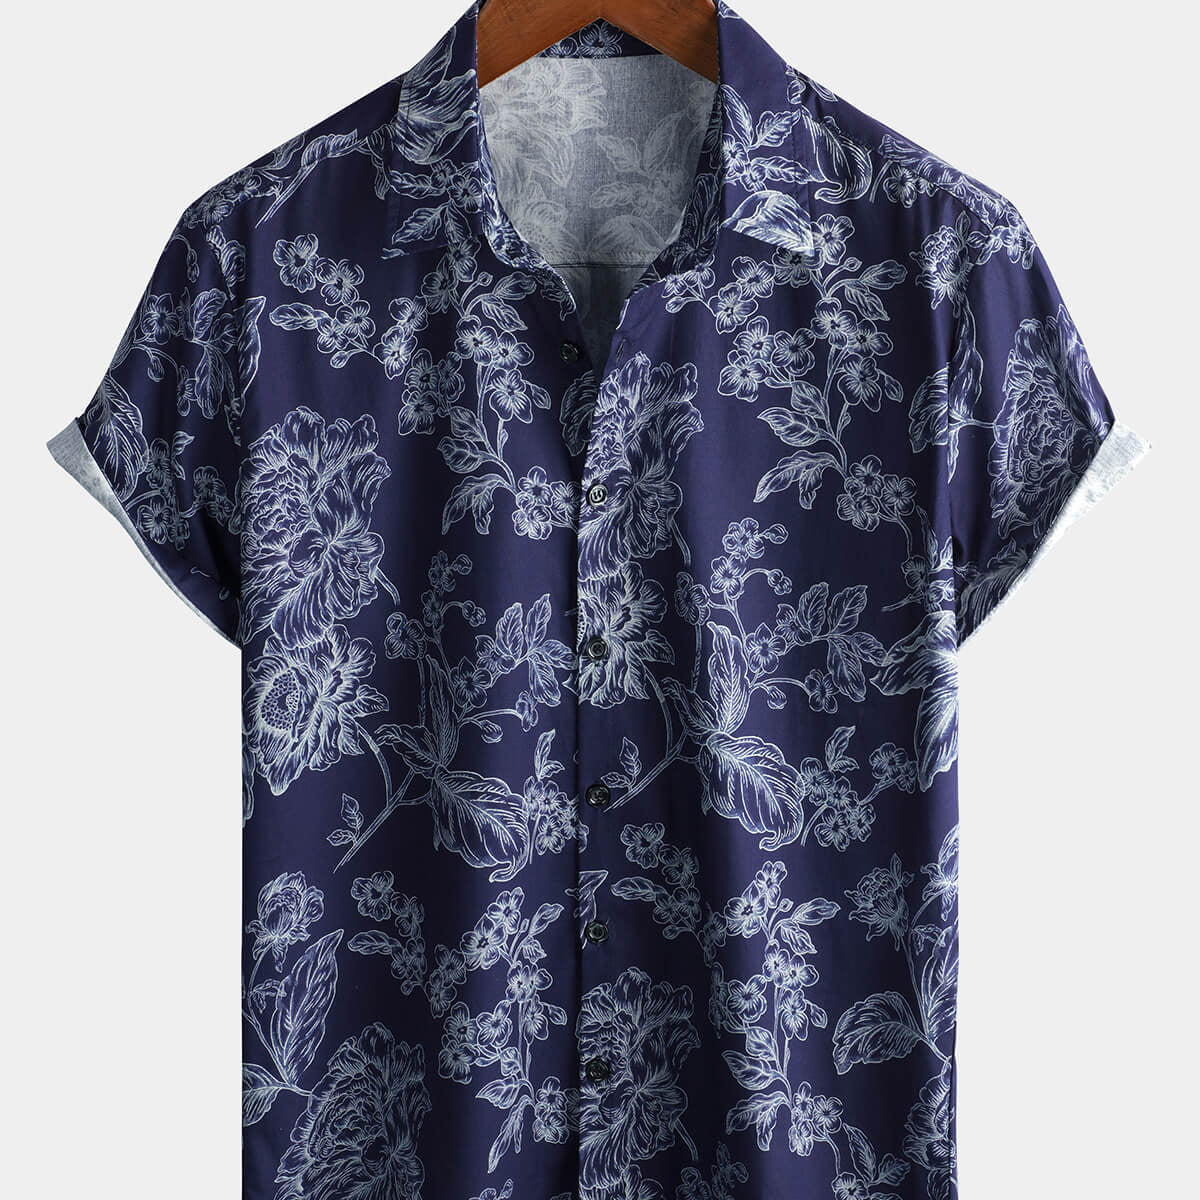 Men's Floral Hawaiian Flower Print Cotton Short Sleeve Shirt